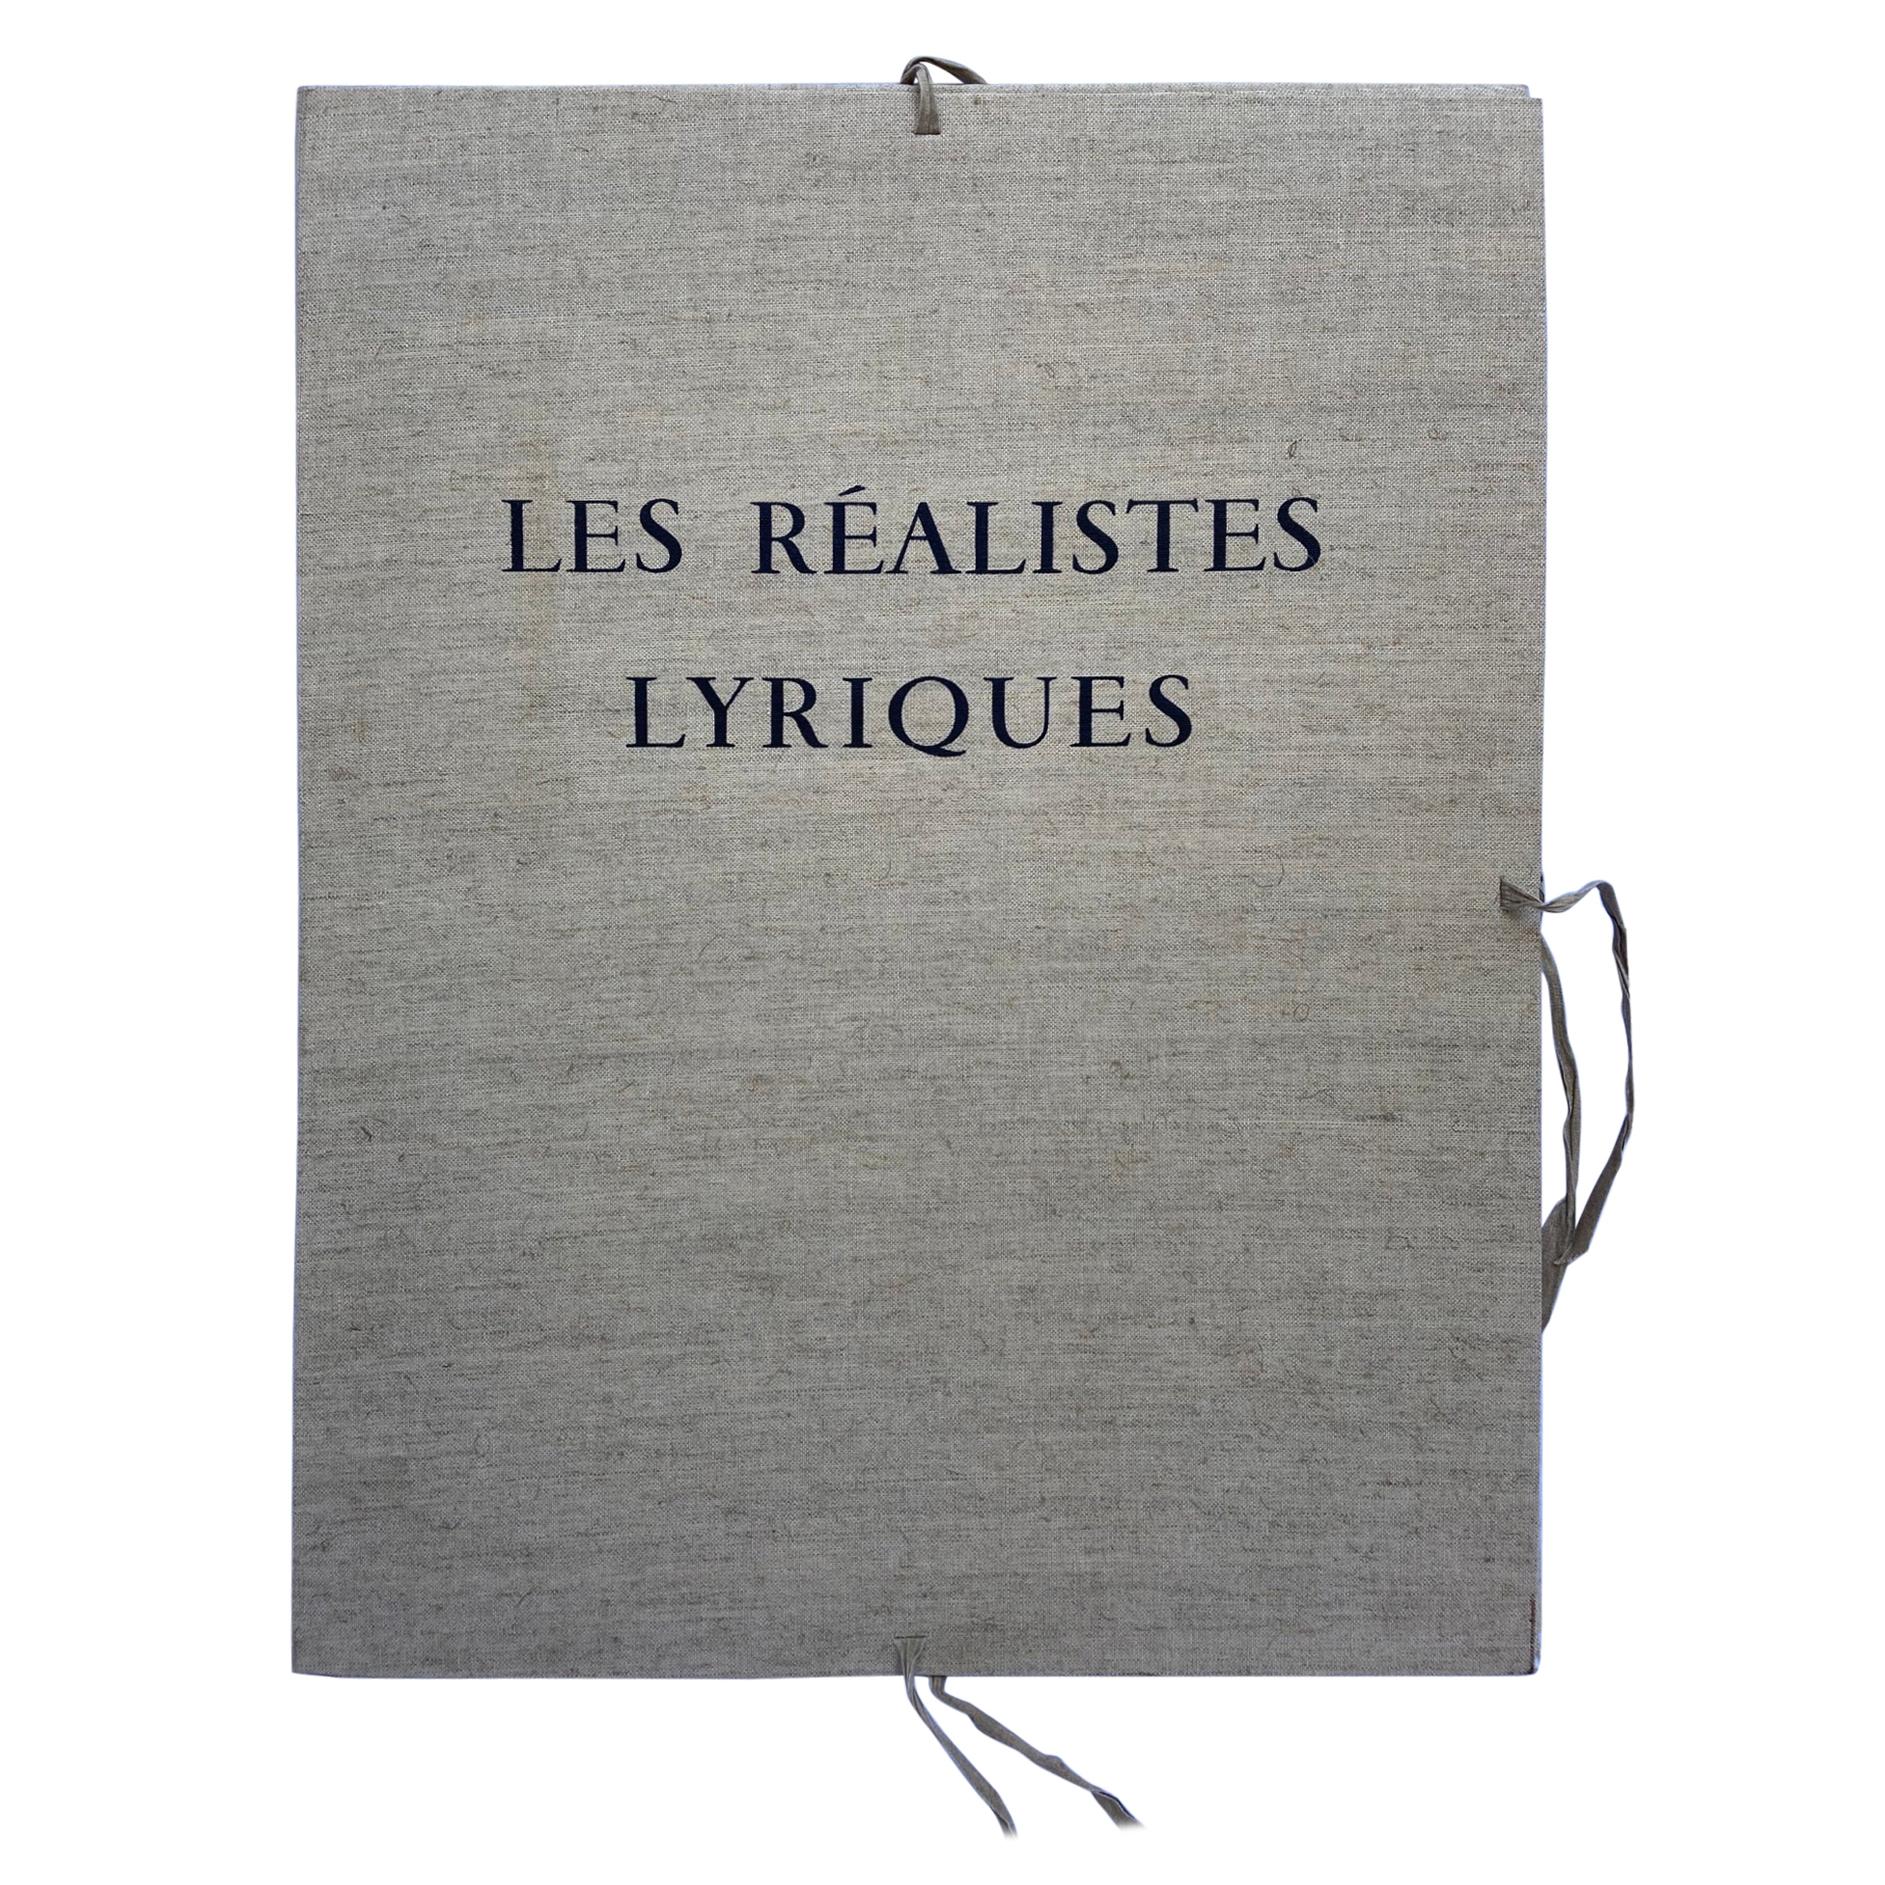 René Huyghe, Canvas Portfolio Les Réalistes Lyriques VIII, 1973